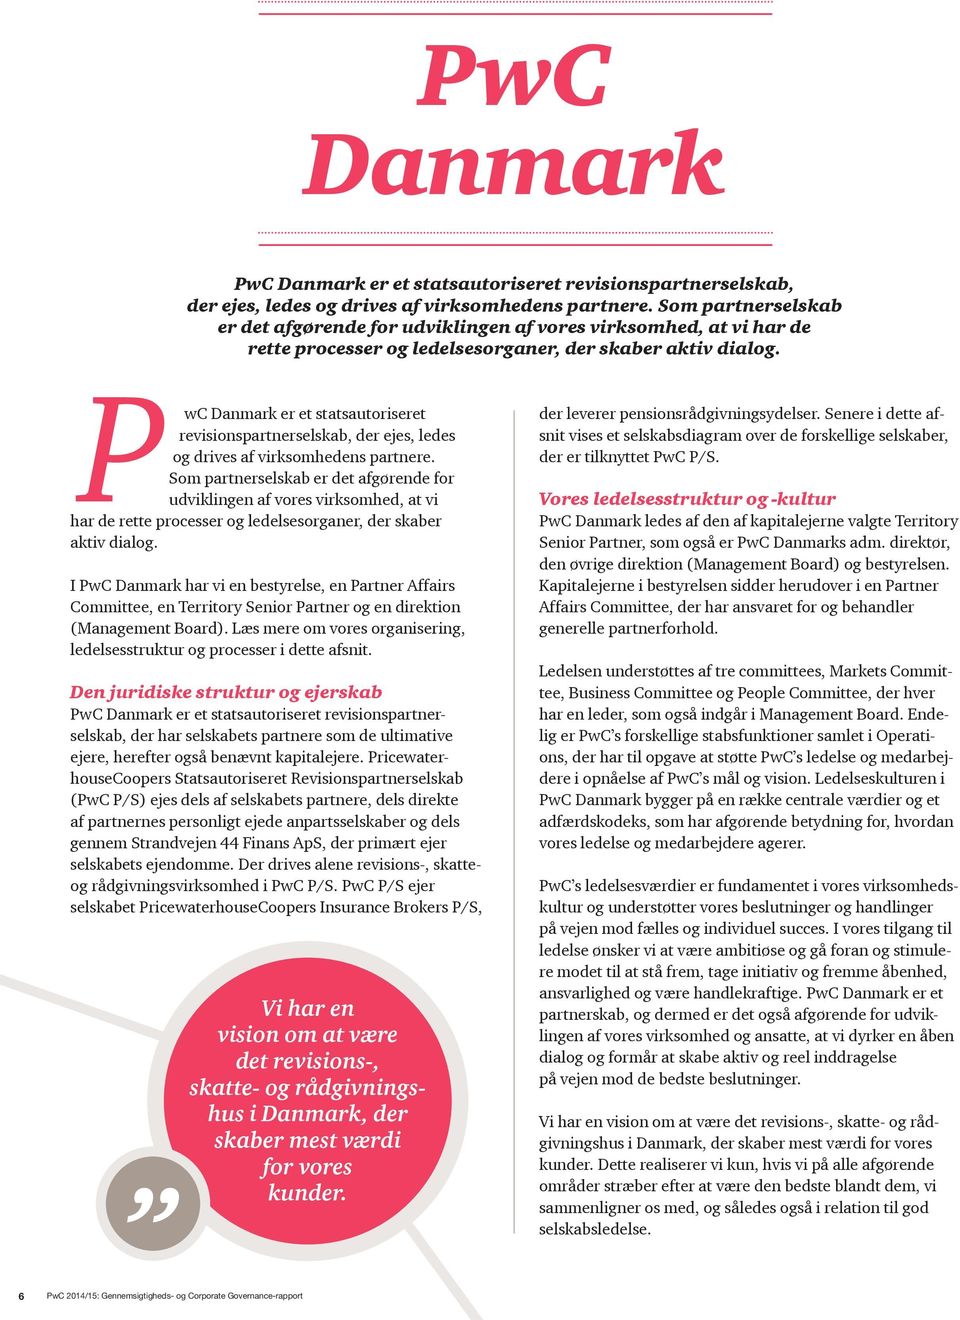 P wc Danmark er et statsautoriseret revisionspartnerselskab, der ejes, ledes og drives af virksomhedens partnere.